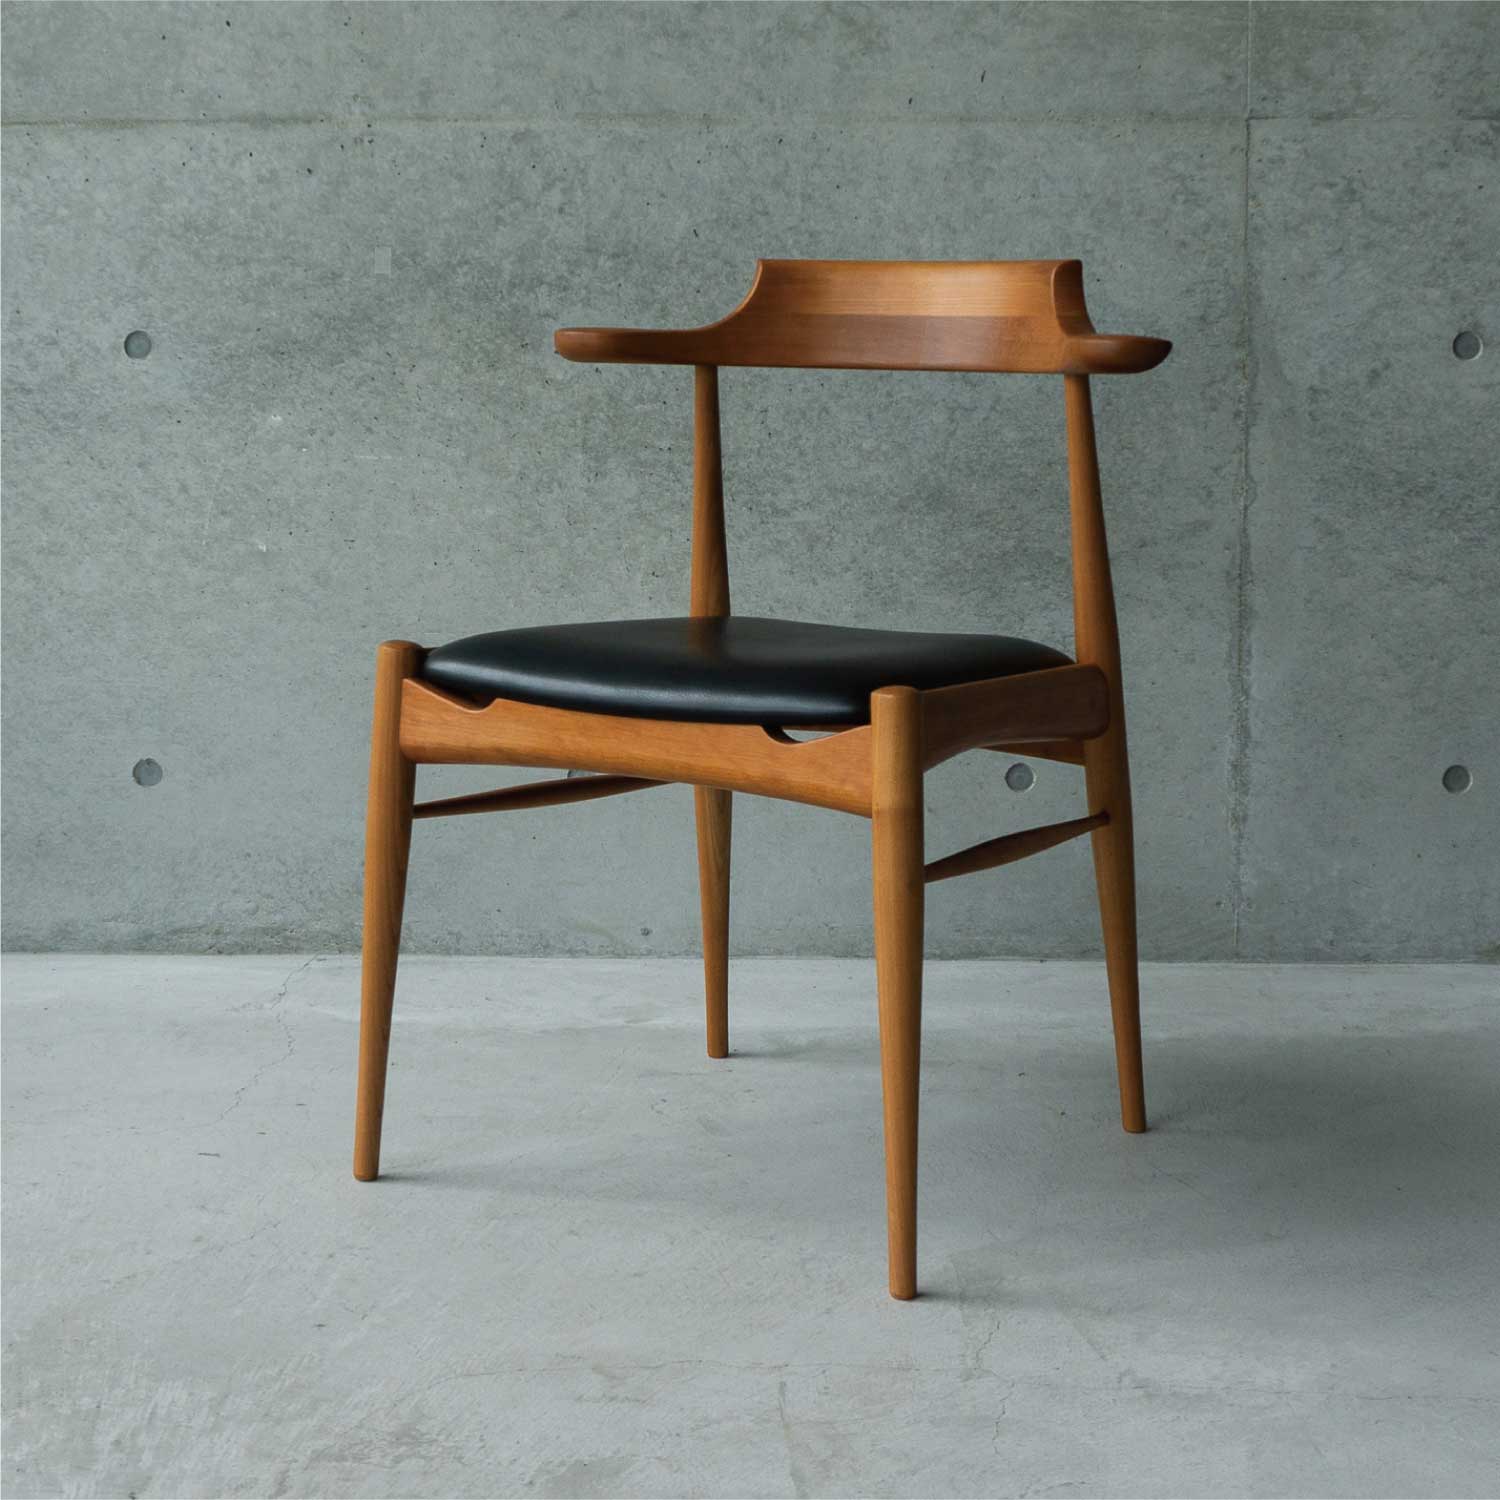 RAMS chair